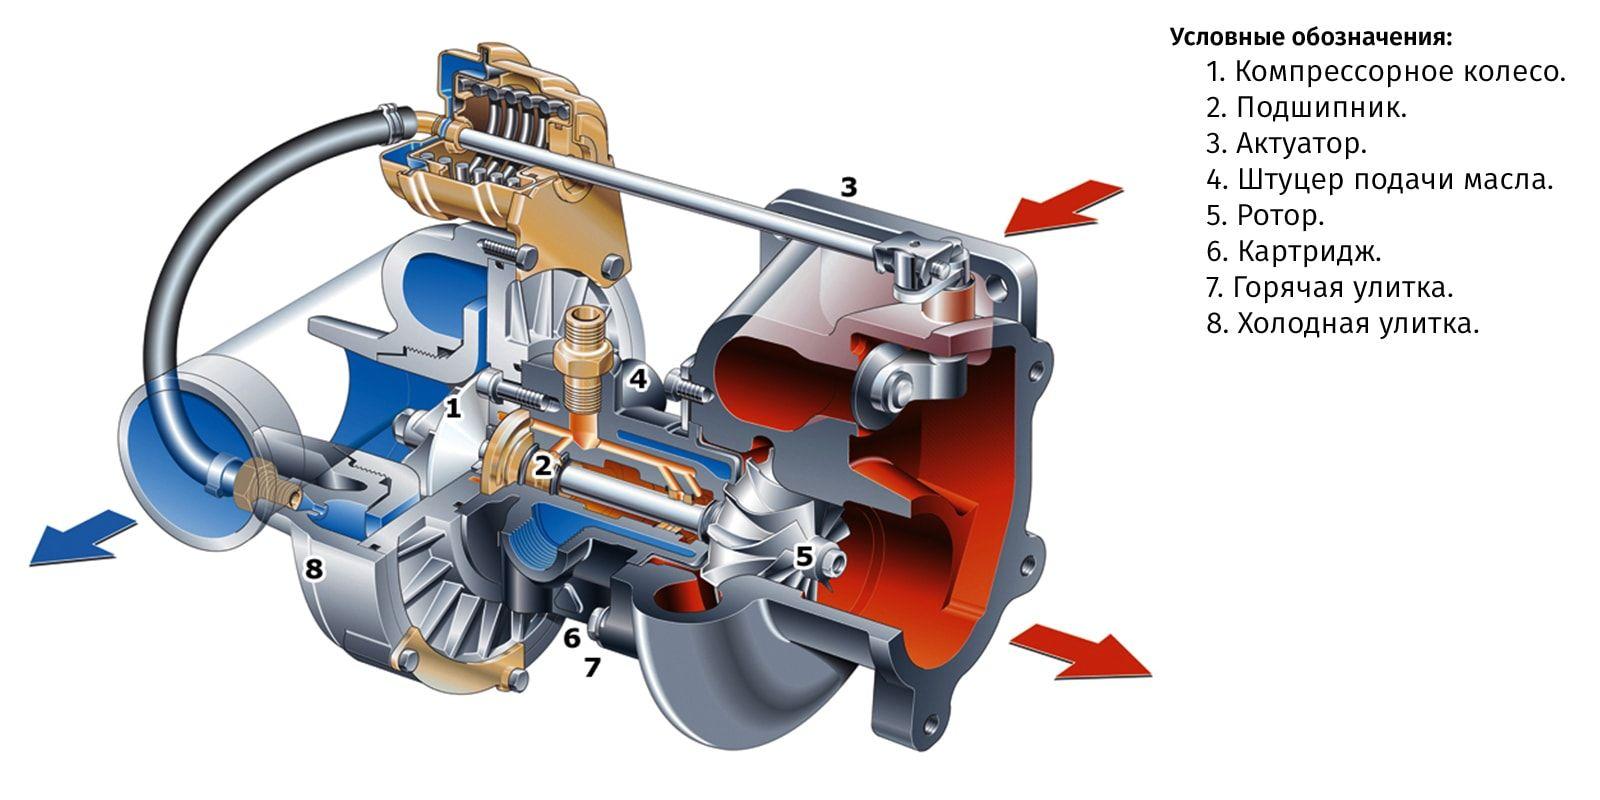 Kako se brinuti za turbopunjač? Kako koristiti turbo automobil?